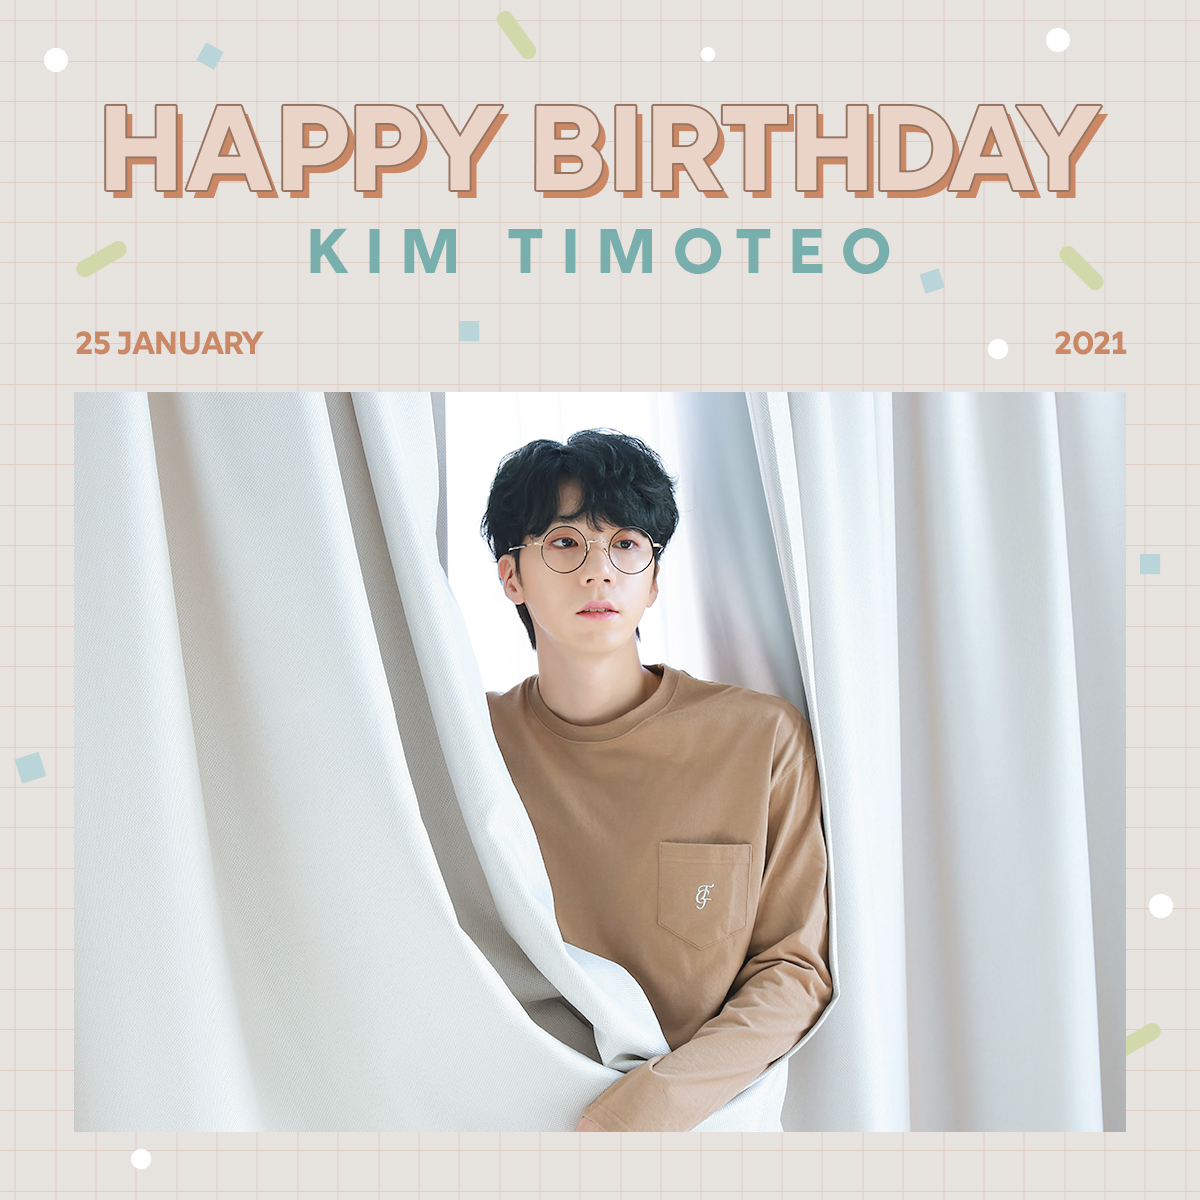 [🎉]
⠀
🎂 HAPPY TIMOTEO DAY 🎂
⠀
티모테오의 생일을 축하합니다 💕
⠀
#핫샷 #HOTSHOT
#김티모테오 #KIMTIMOTEO
#HAPPYBIRTHDAY_TIMOTEO